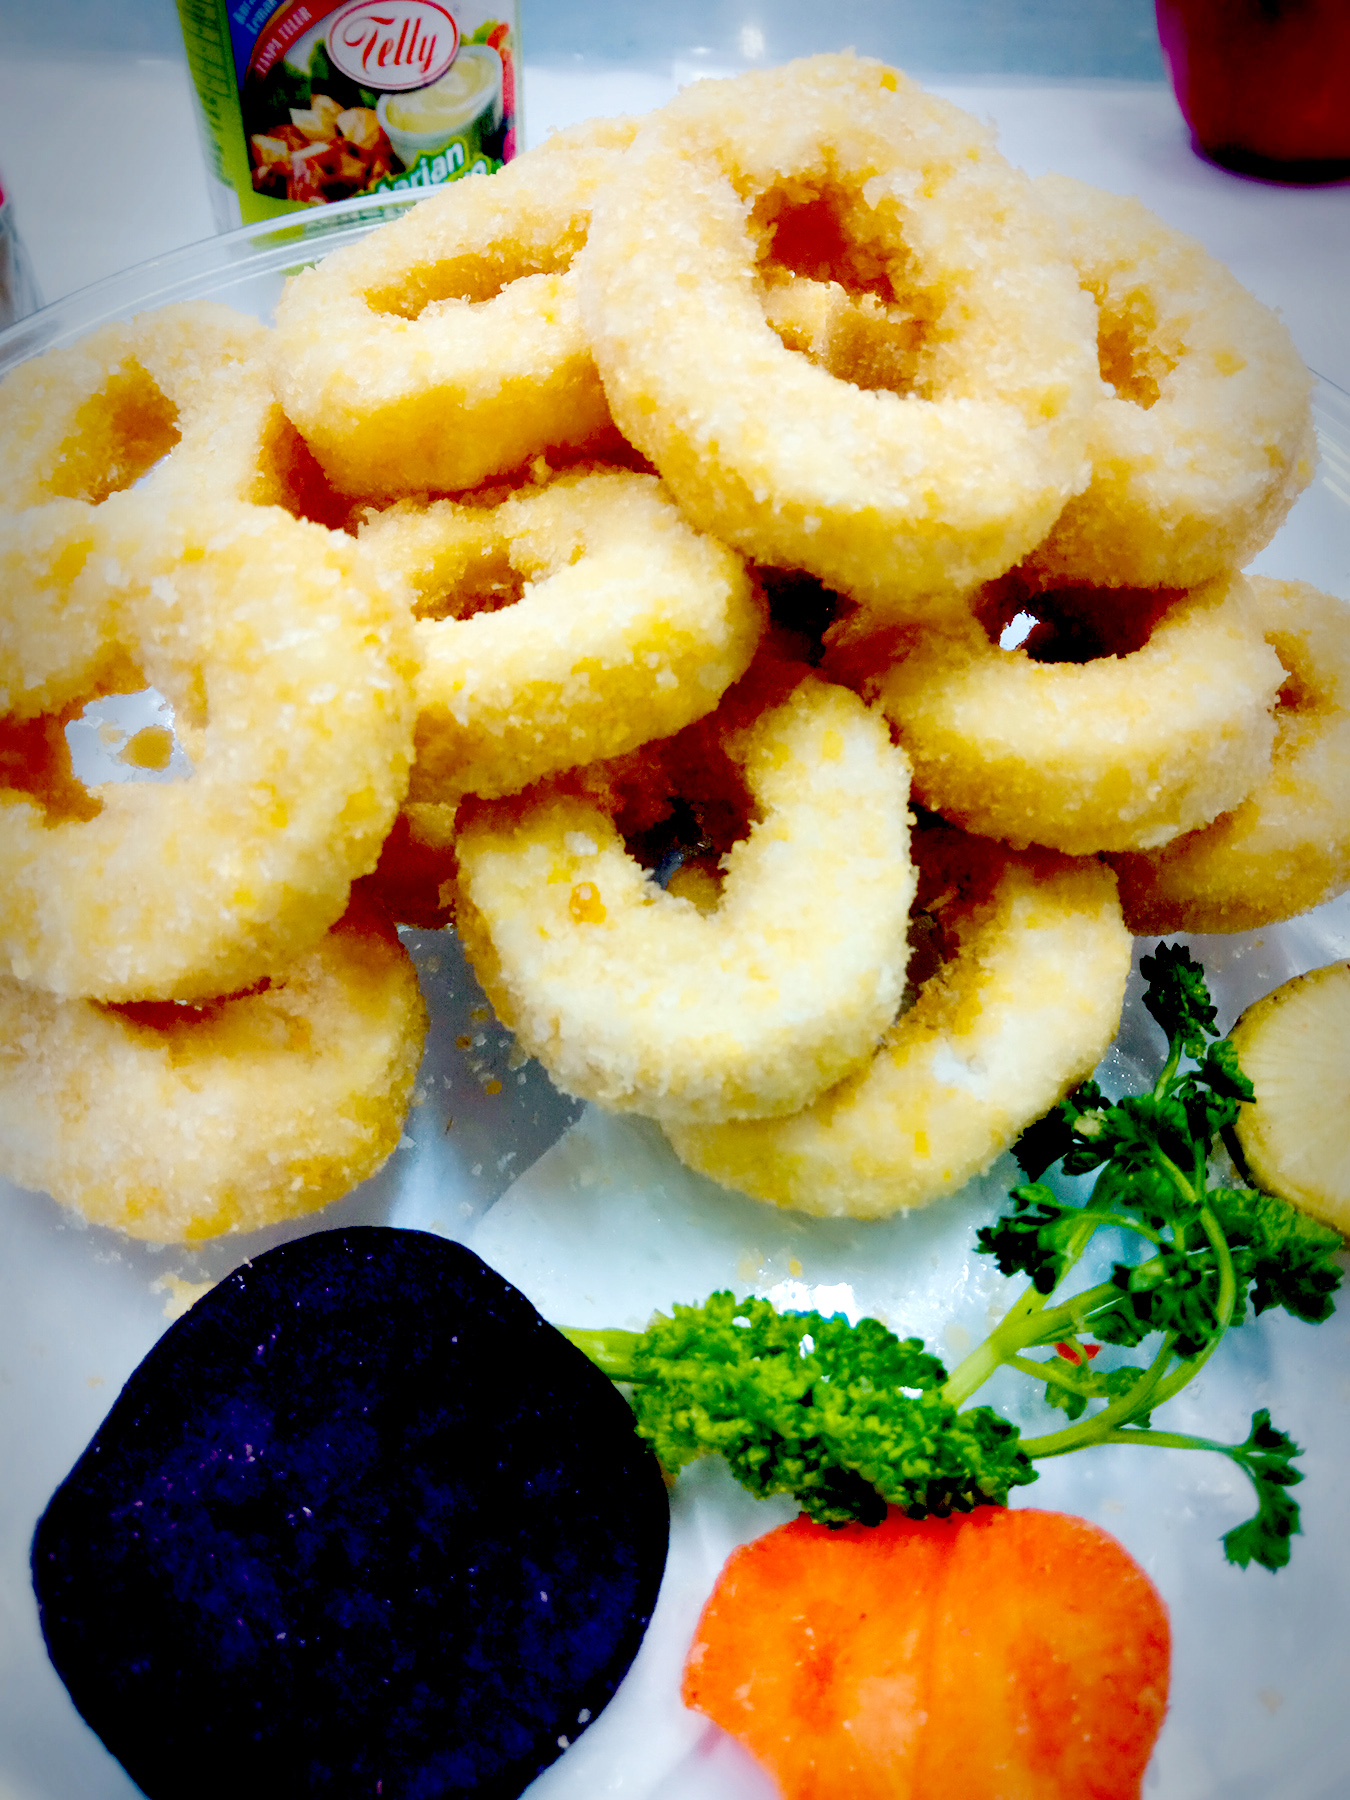 Image CK Fried Squid Ring calamari (Vegan) 全广 - 花枝圈 3000grams